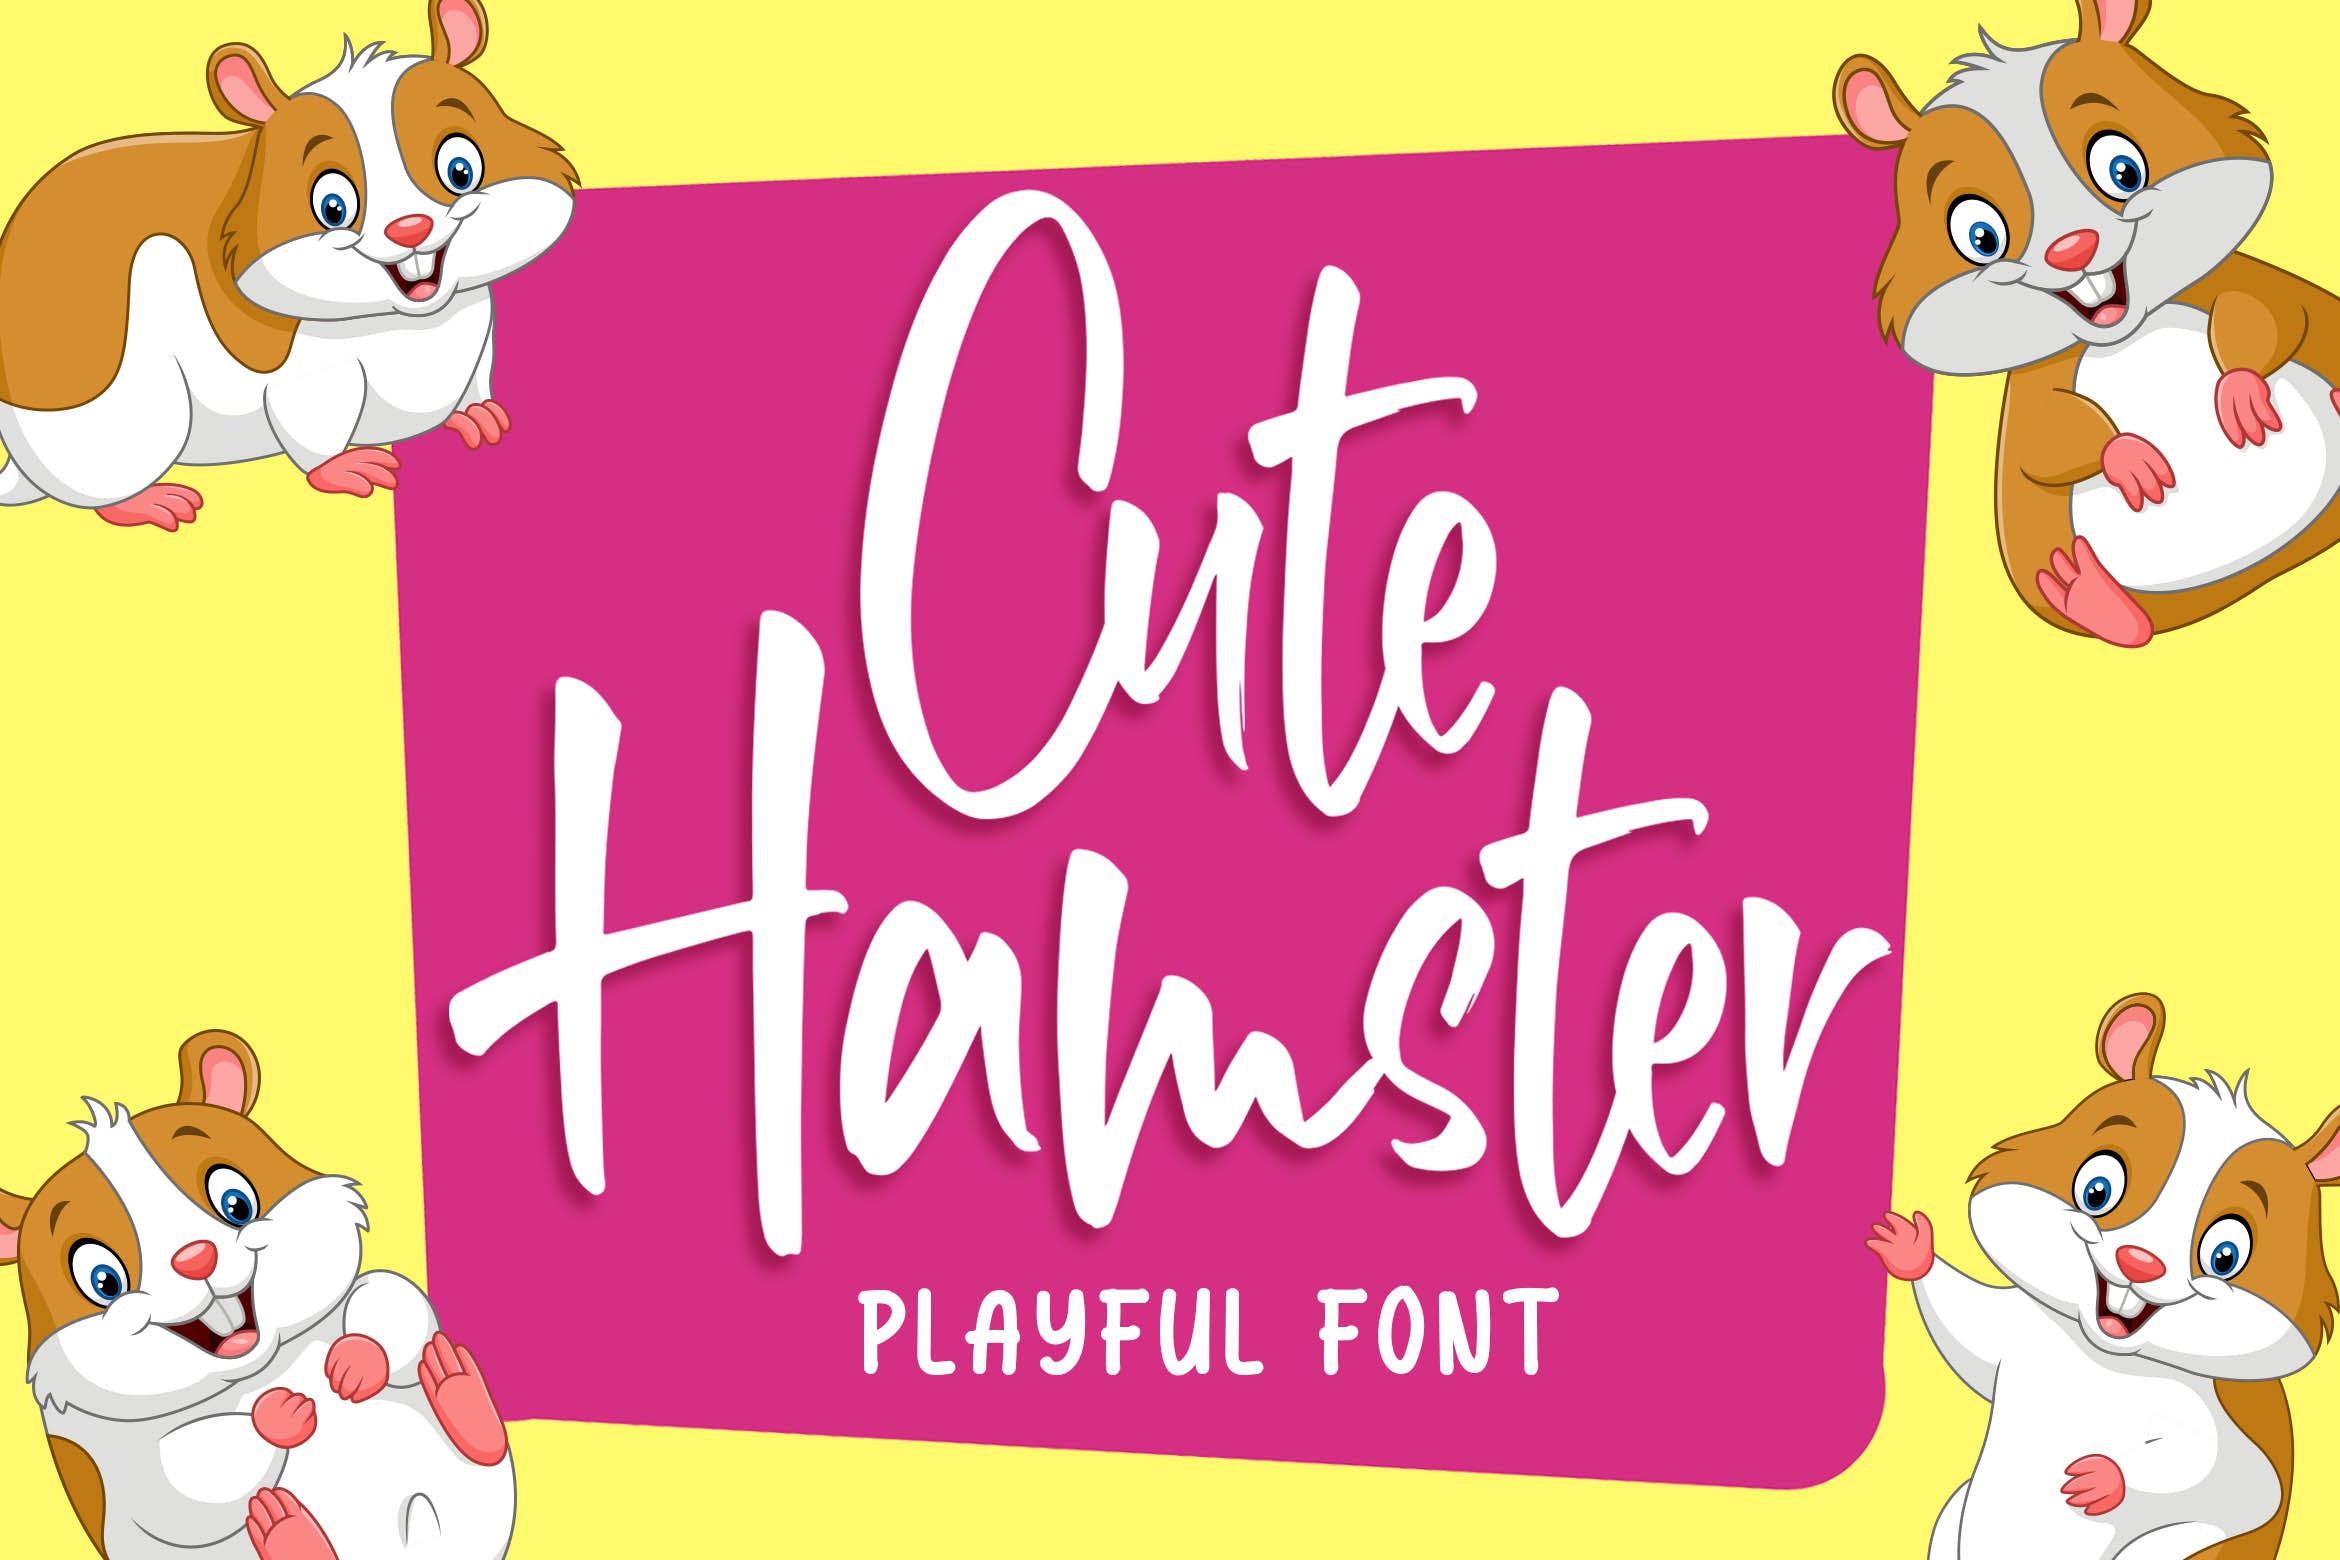 俏皮可爱风格英文手写装饰字体亿图网易图库精选 Cute Hamster – Playful Font插图